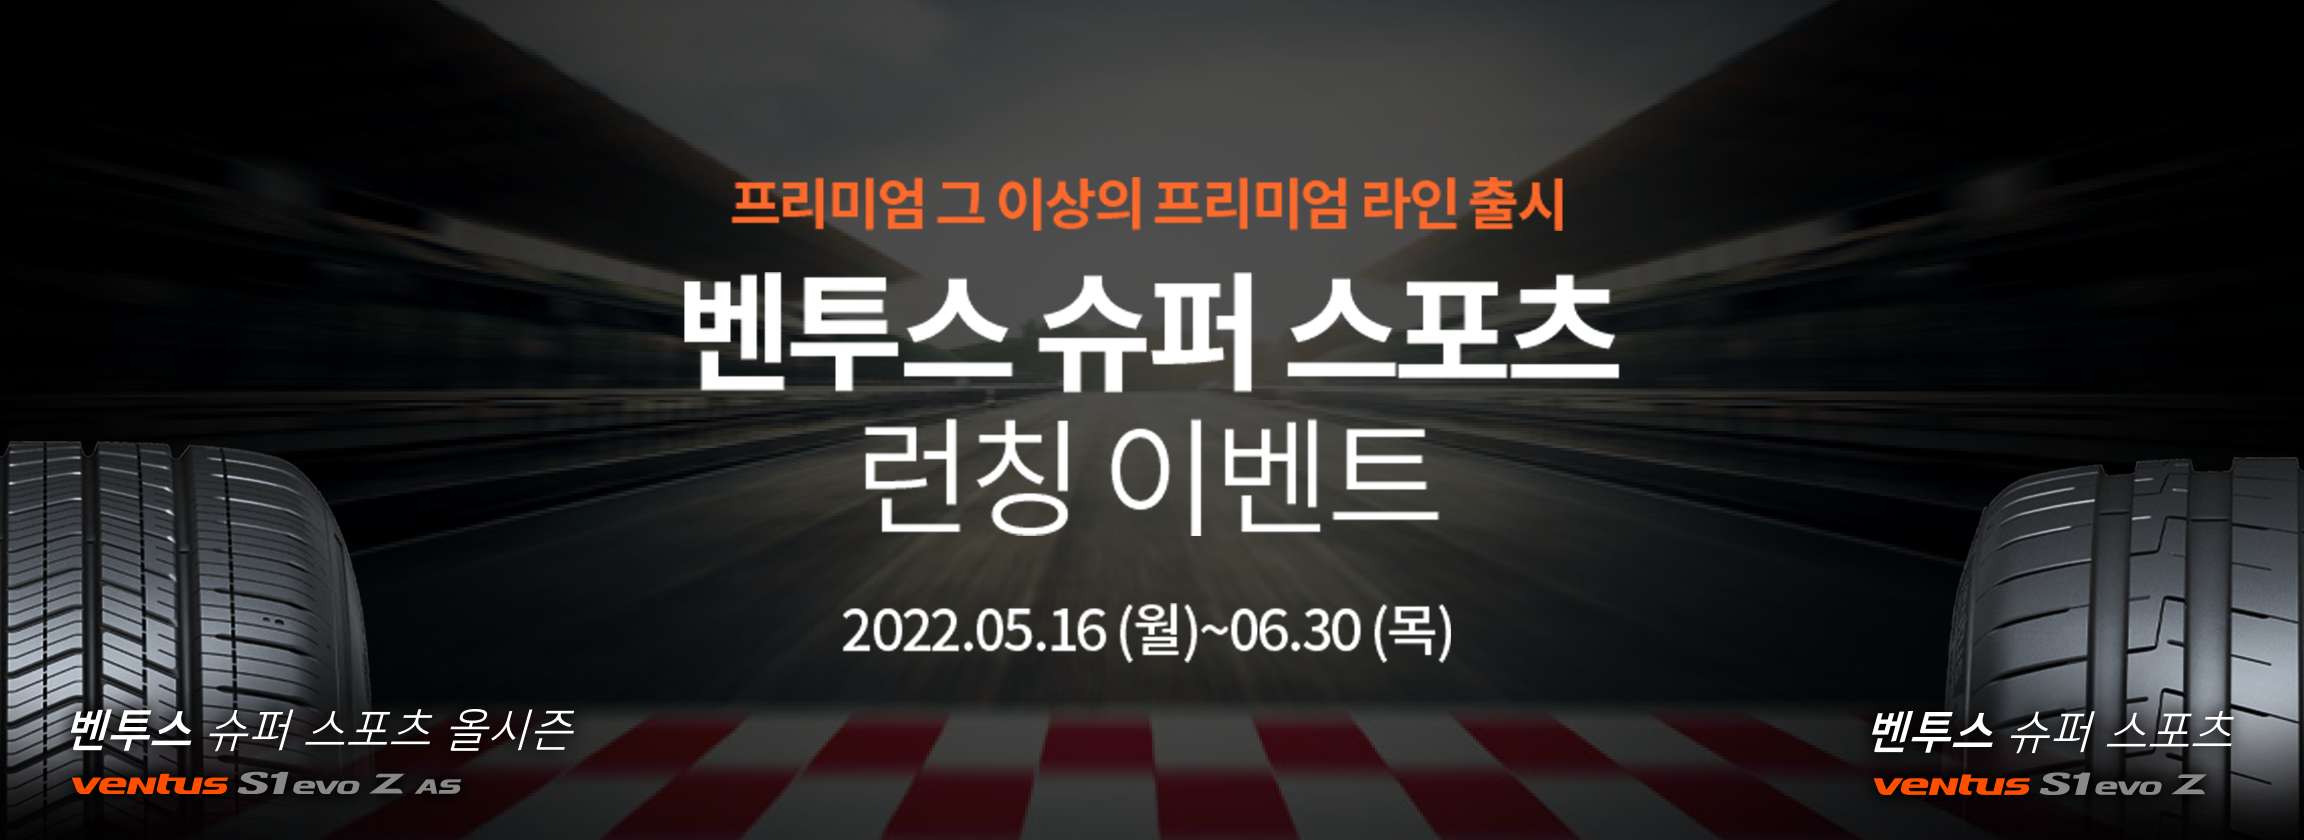 한국타이어, 초고성능 타이어 ‘벤투스 슈퍼 스포츠’ 출시 기념 프로모션 진행